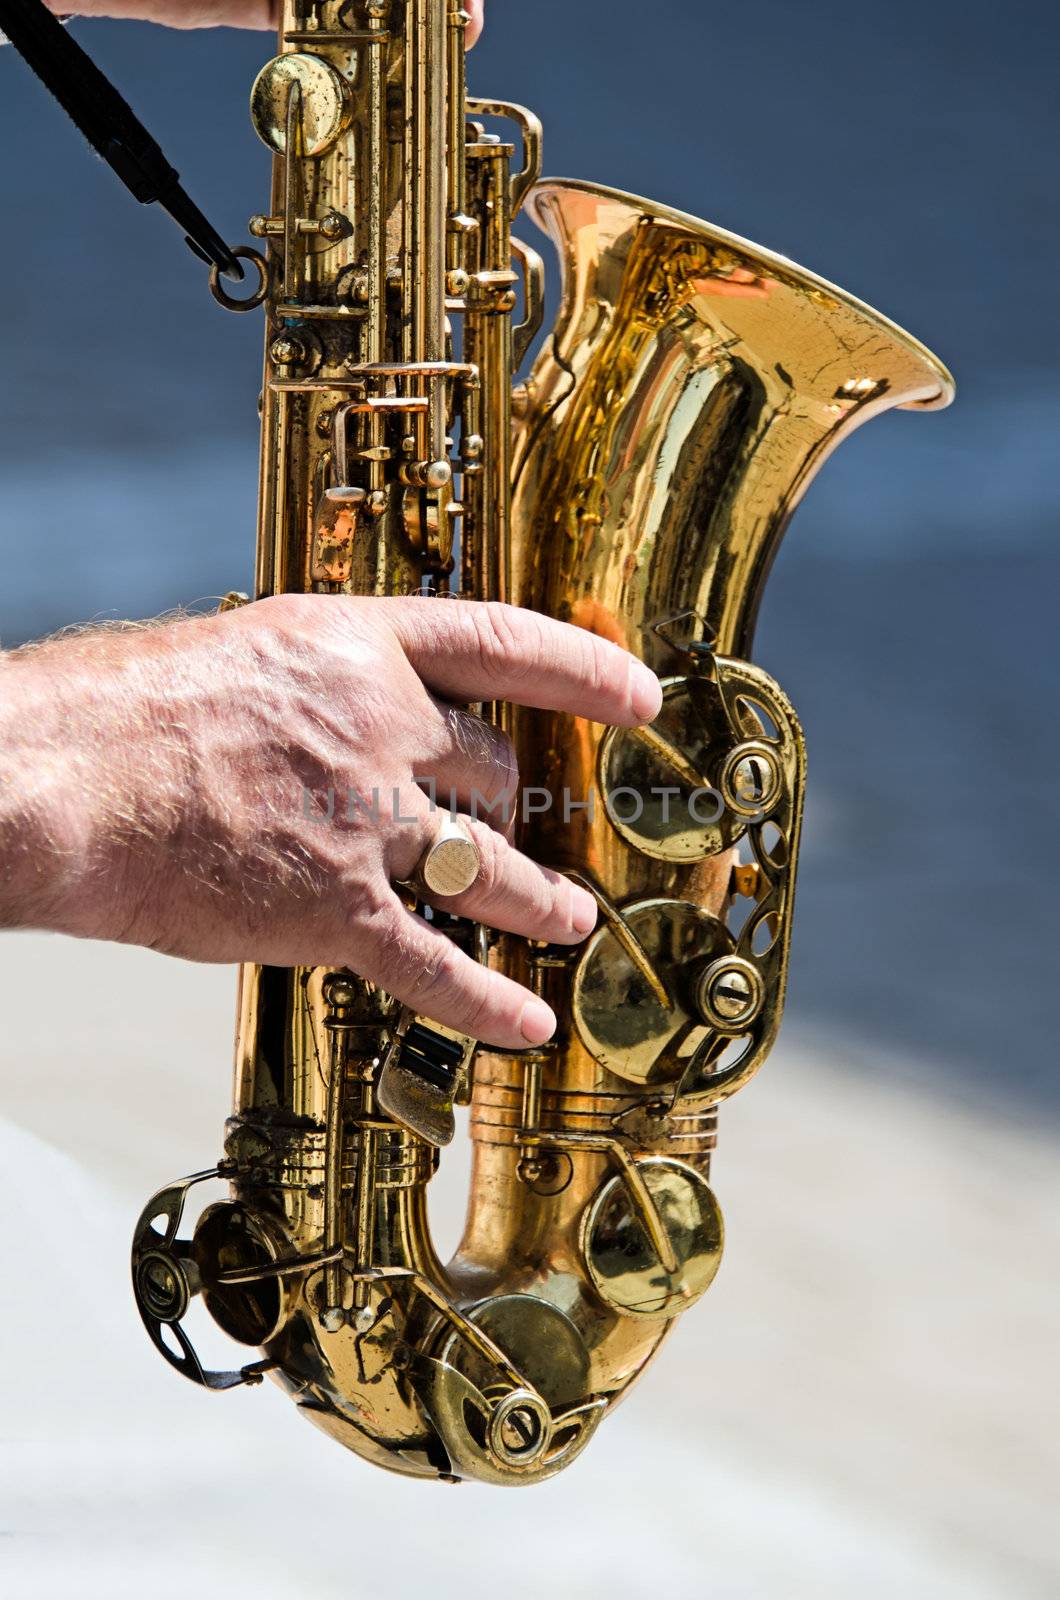 the saxophone player by njaj